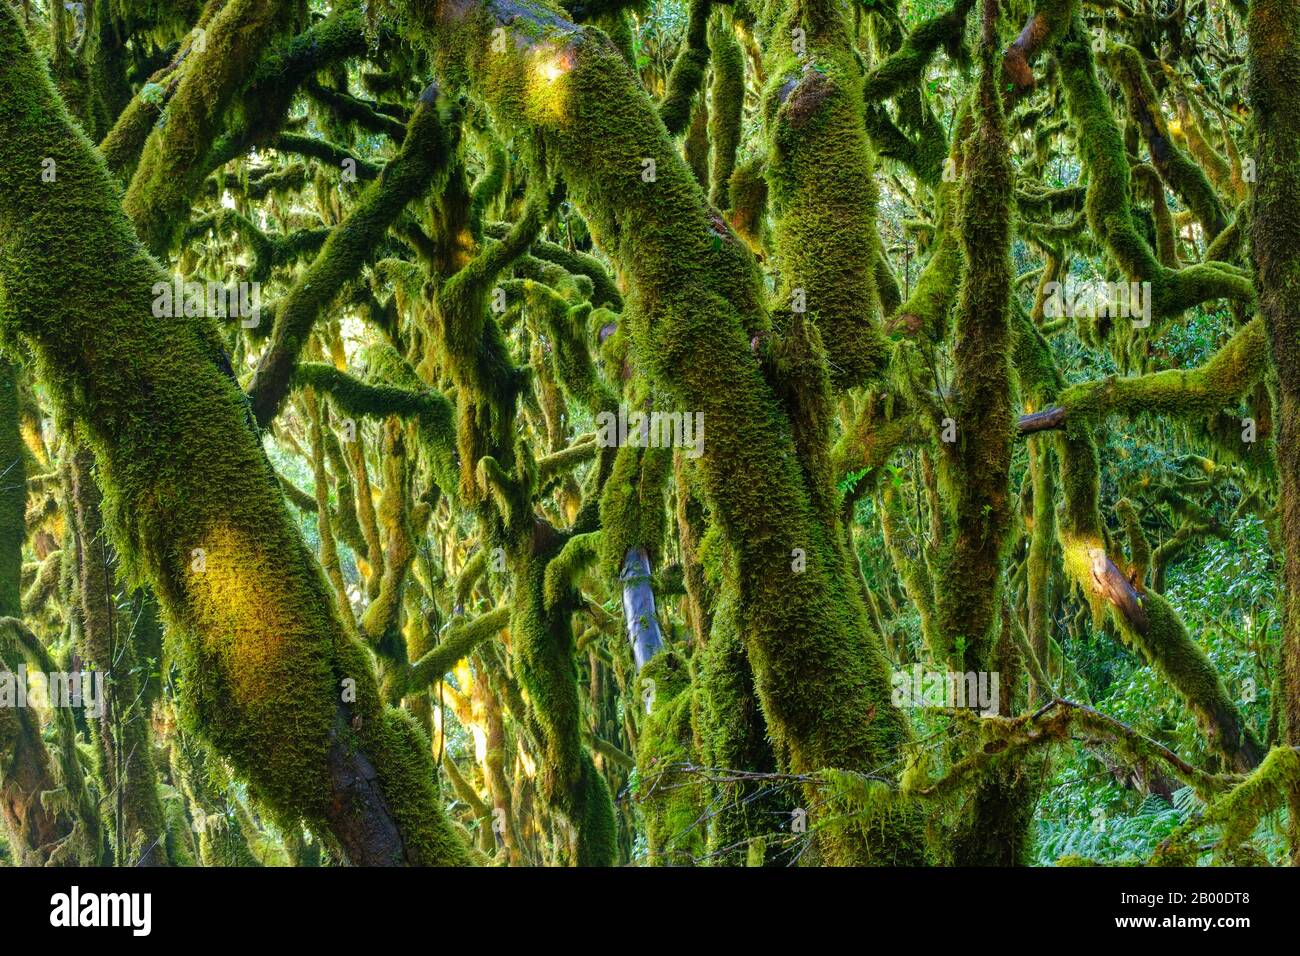 Arbres couverts de Moss dans la forêt nuageuse, parc national de Garajonay, la Gomera, îles Canaries, Espagne Banque D'Images